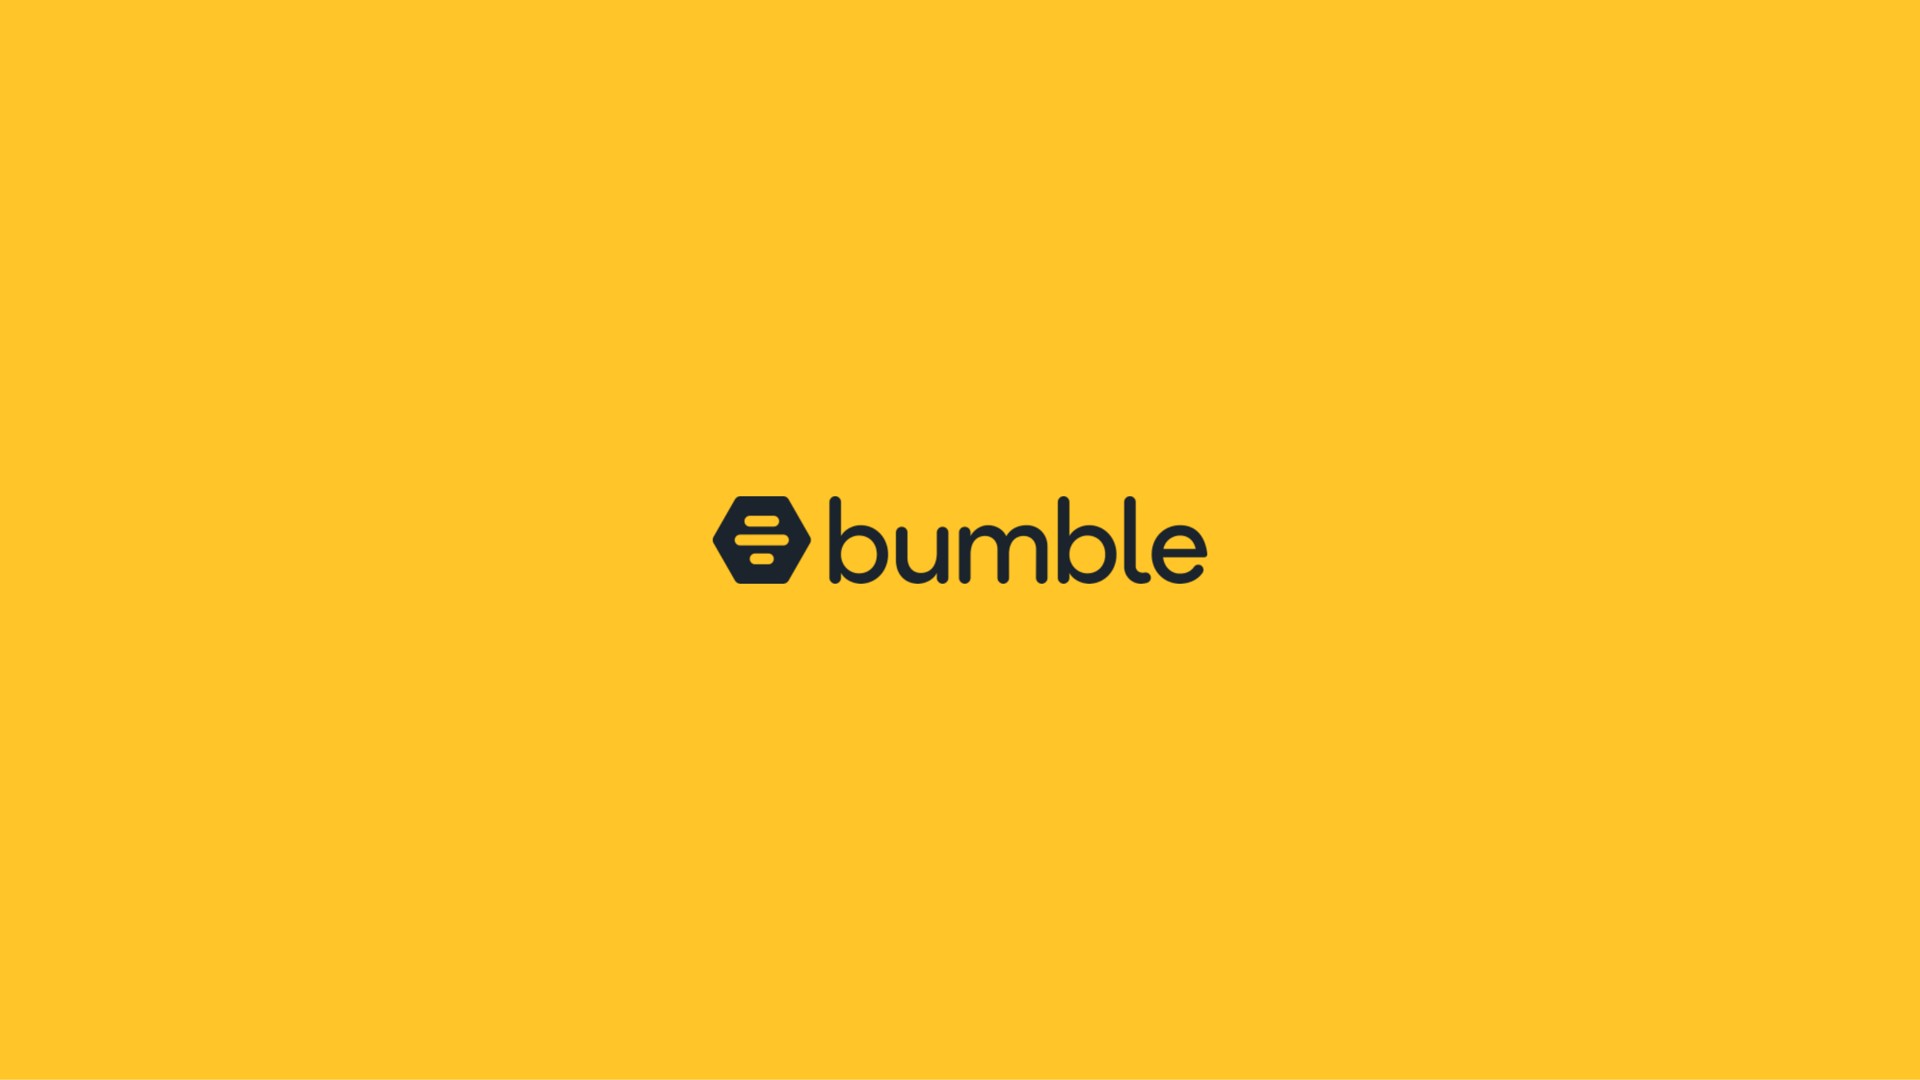 bumble | Bumble